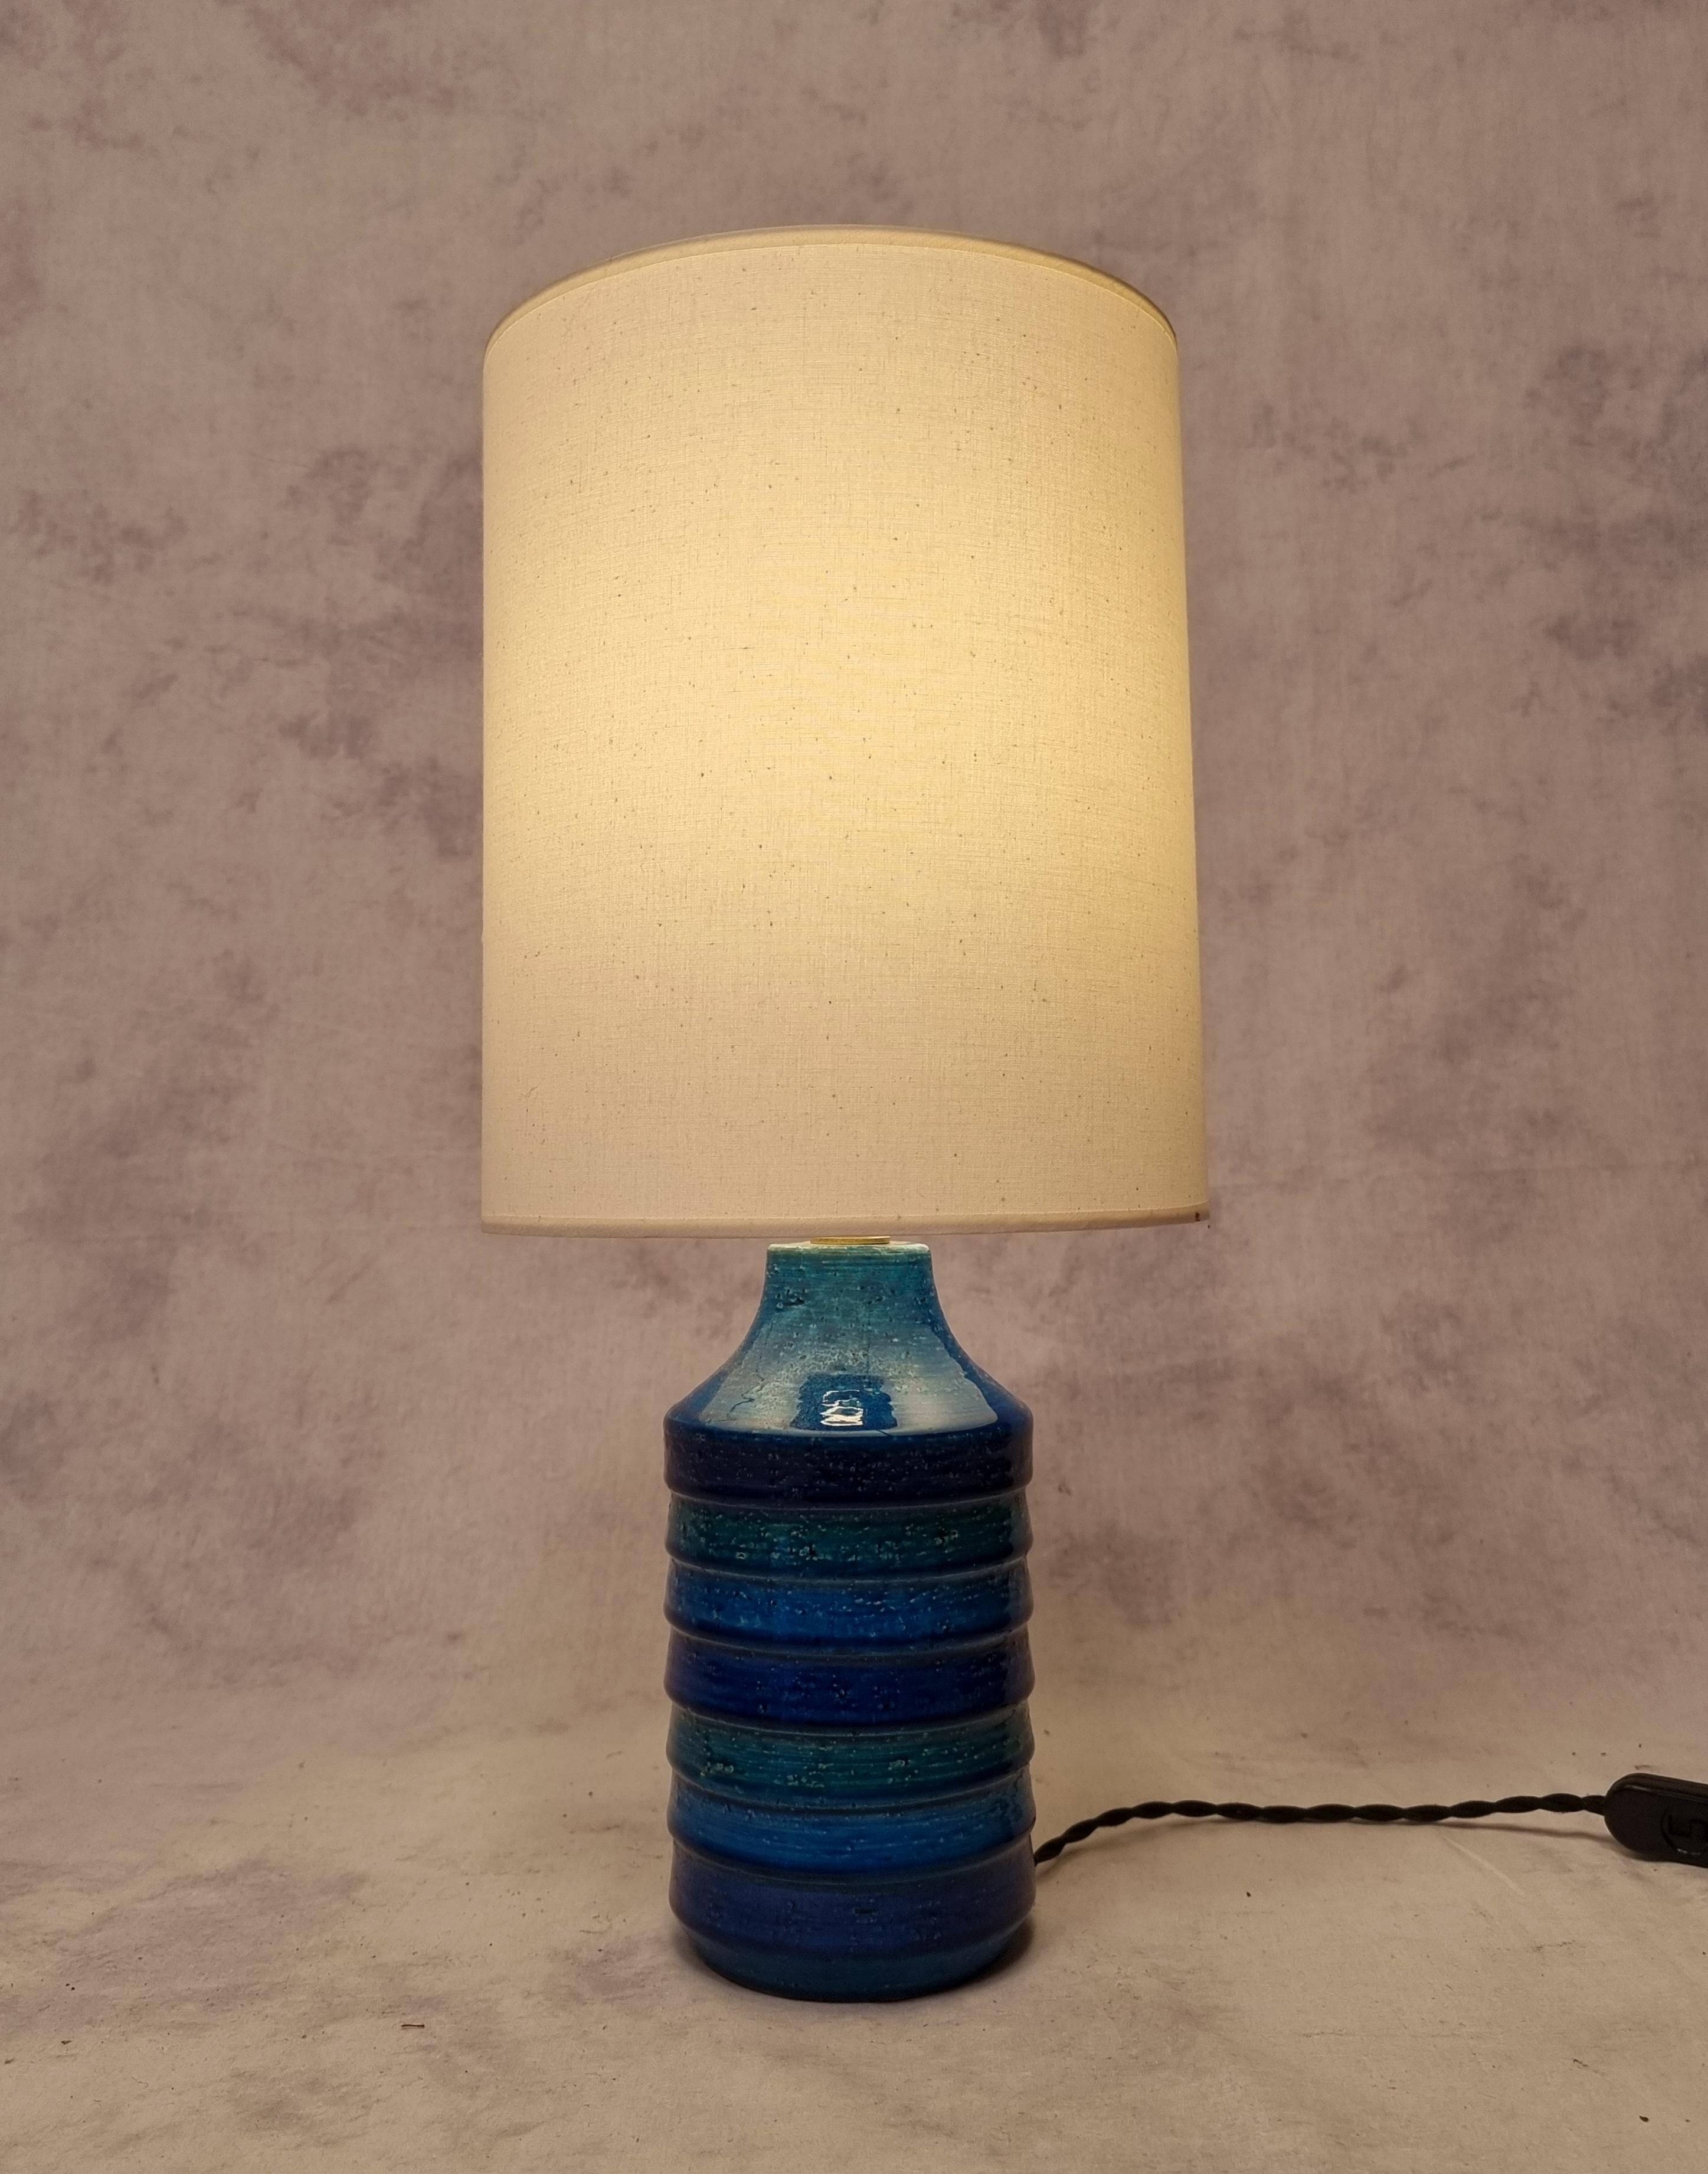 Belle lampe de table du designer italien Aldo Londi produite par Bitossi dans les années 1960. Cette lampe en céramique émaillée est de la couleur de référence d'Aldo Londi, le 